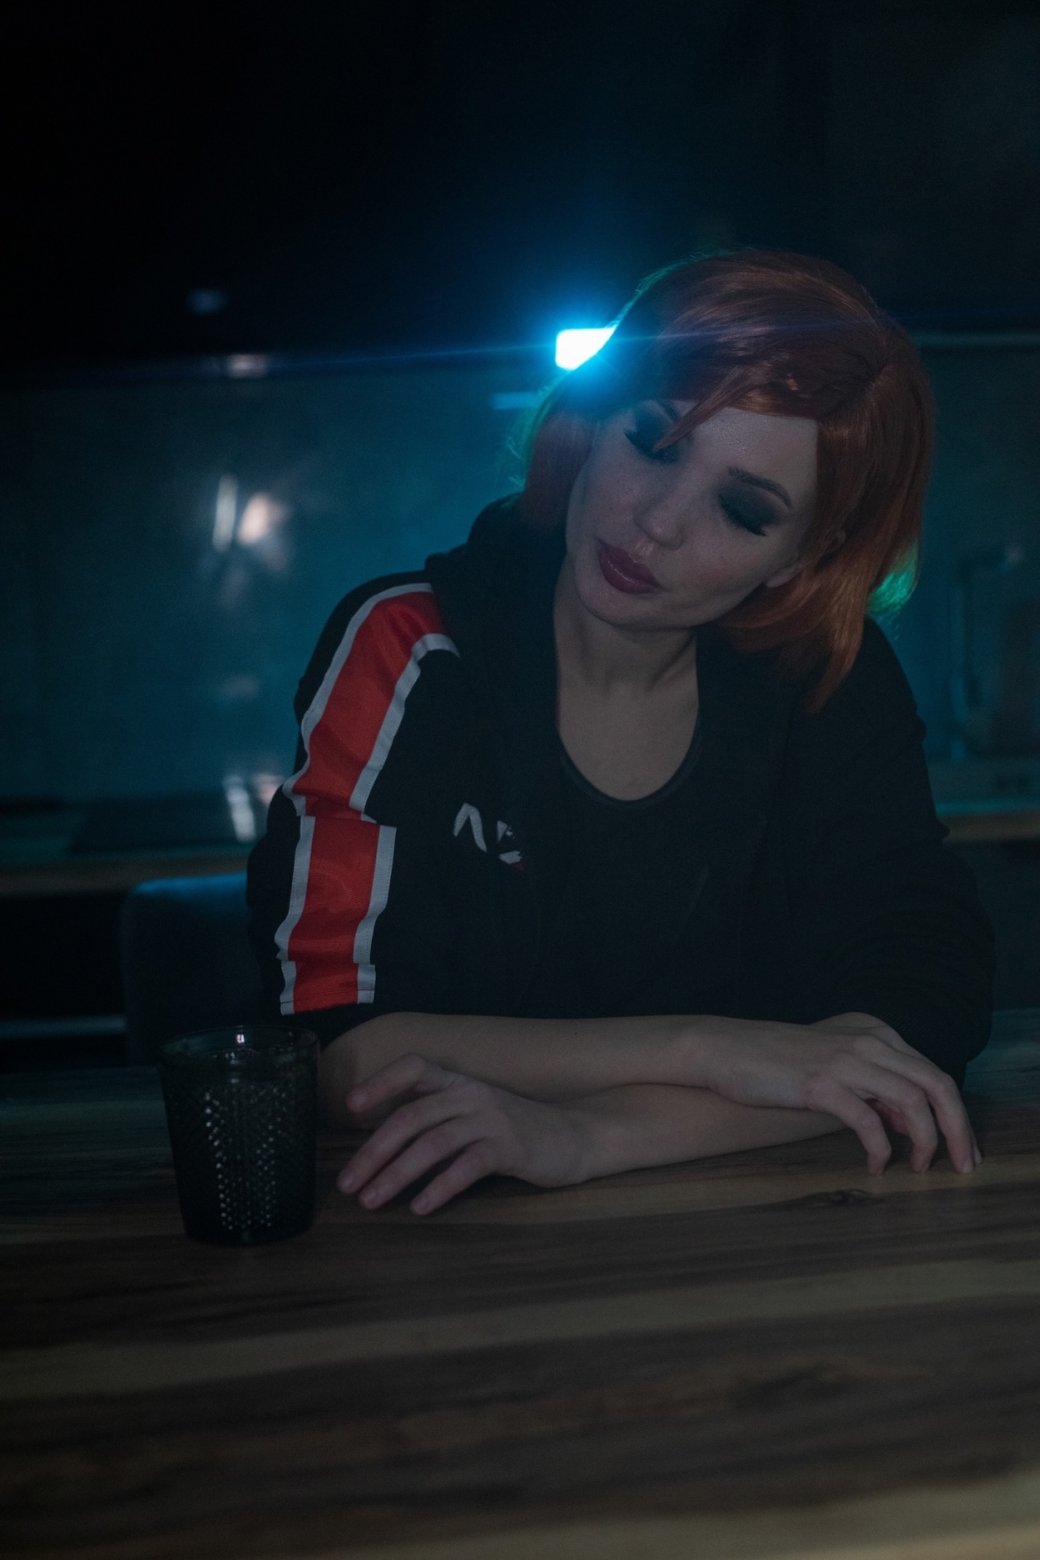 Галерея Косплеер показала Джейн Шепард из Mass Effect 3 под домашним арестом - 8 фото